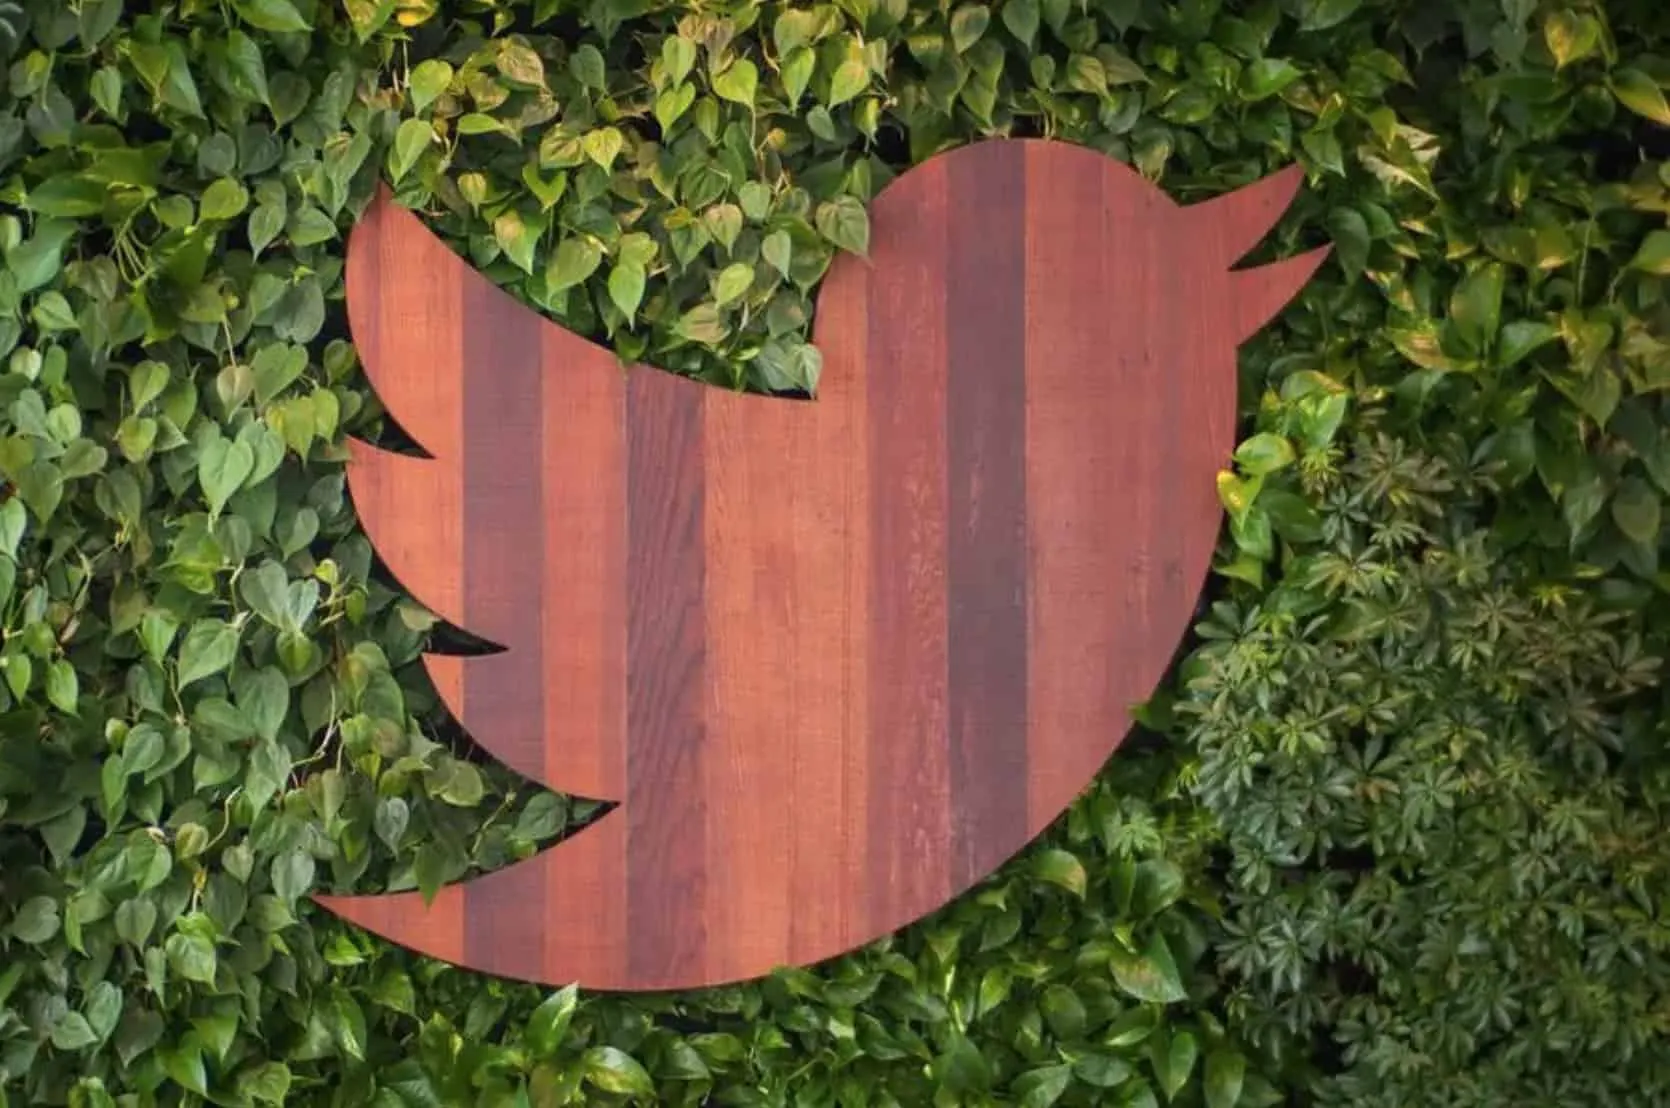 Твиттер запрещает размещать фотографии третьих лиц без их согласия